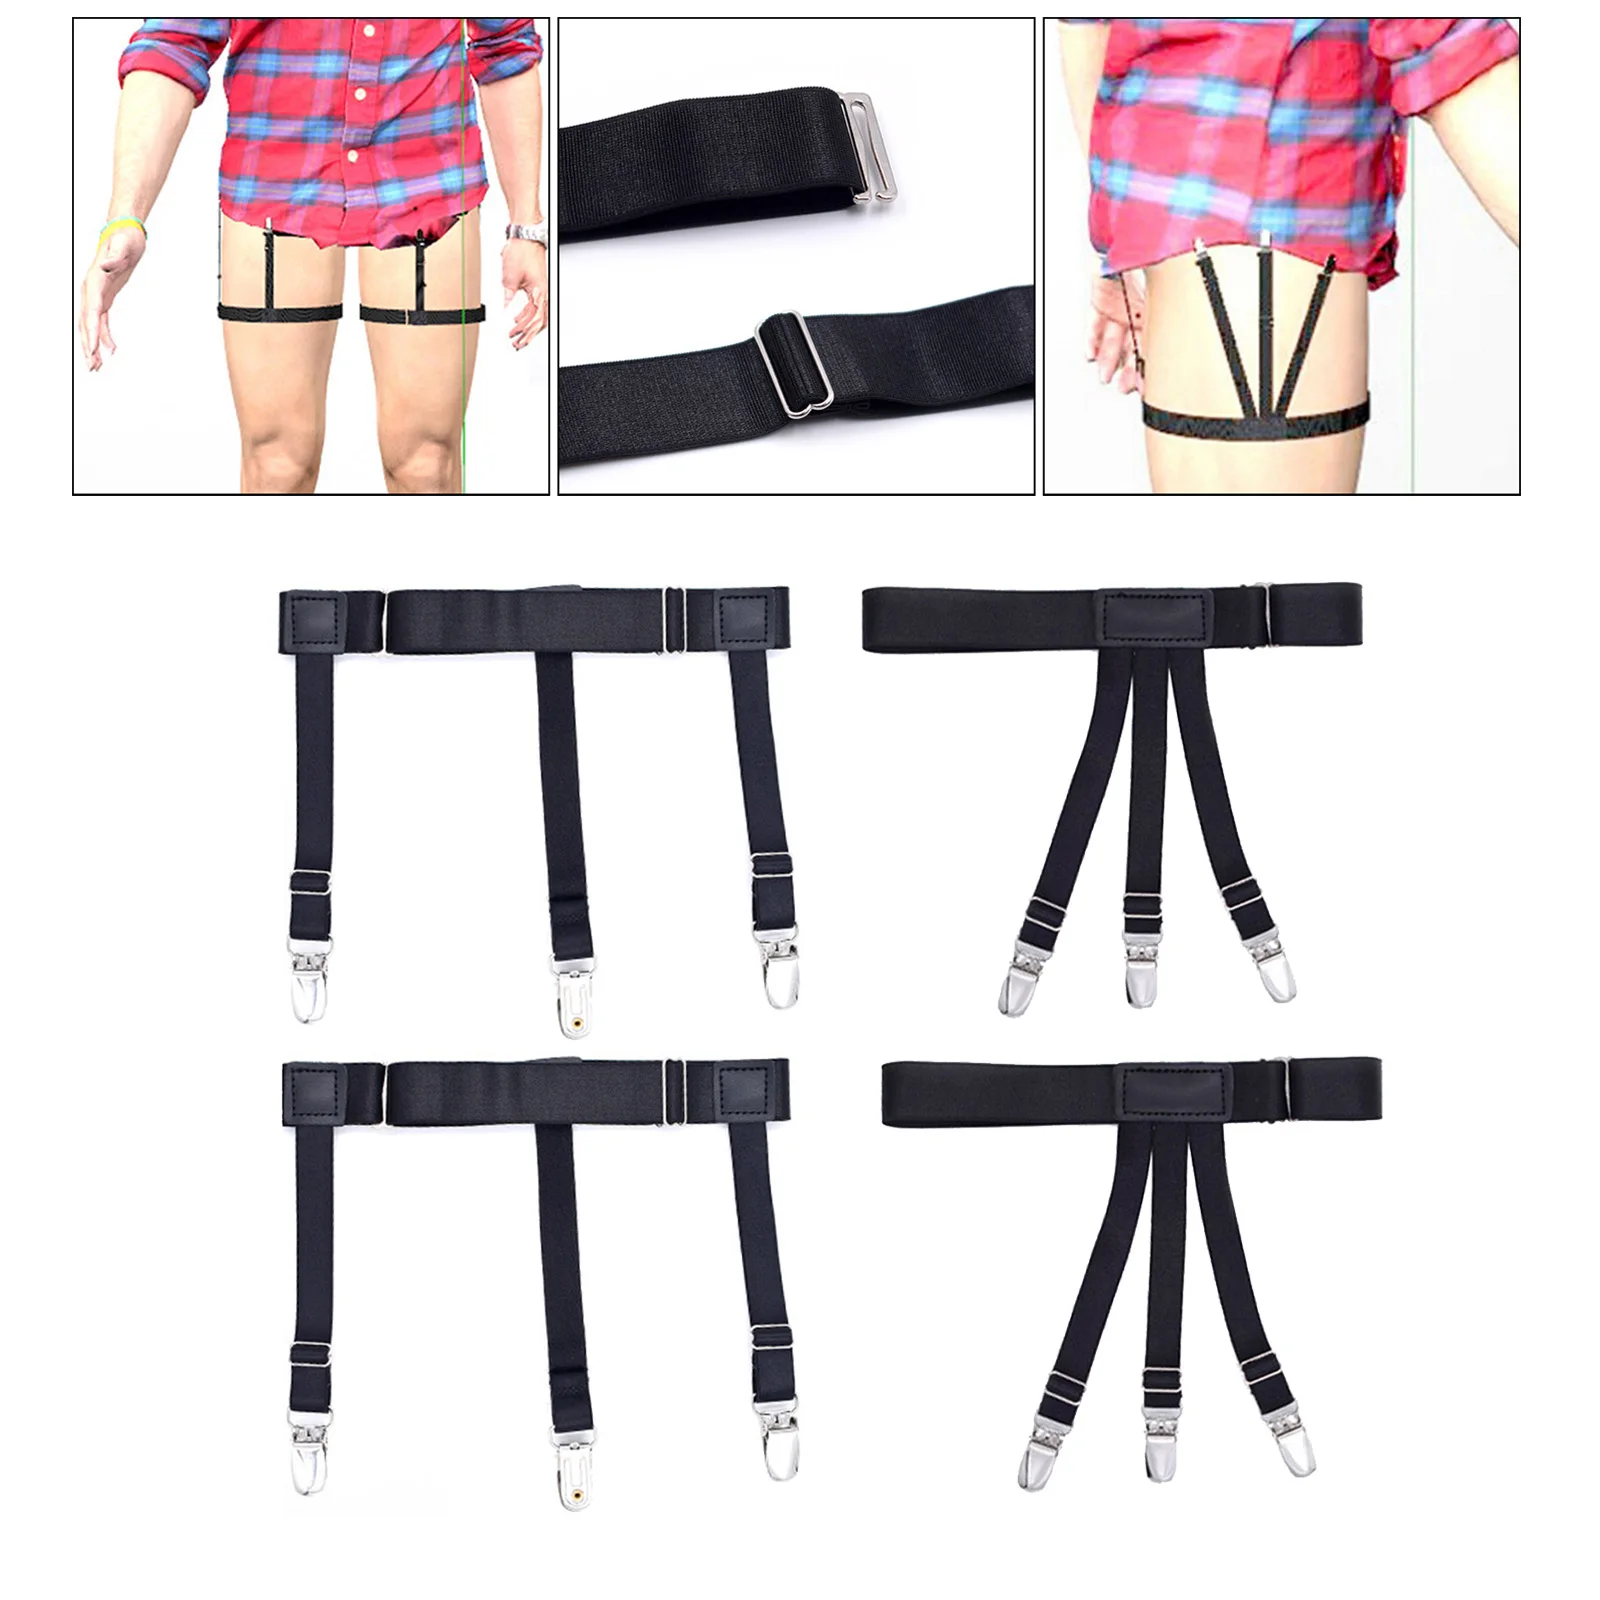 2x Shirt Stays Suspenders Leg Garters Adjustable Elastic  Men Women